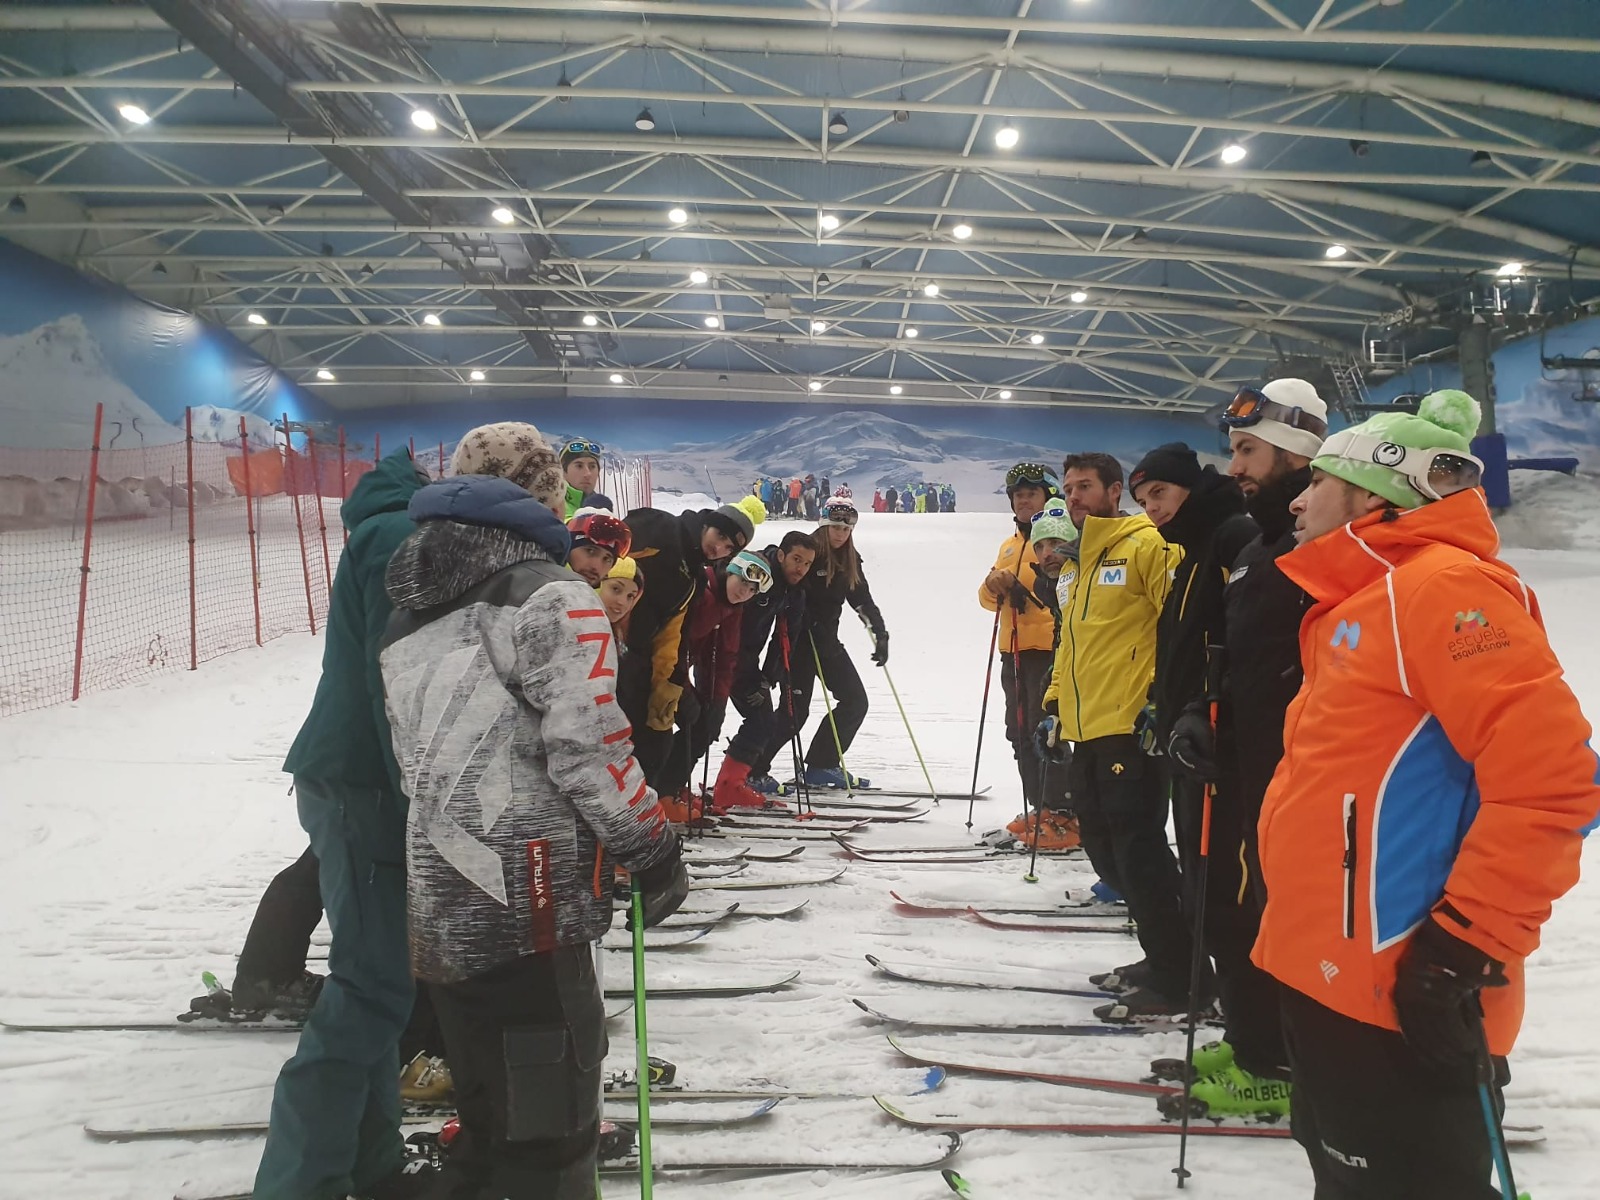 La Escuela Española de Esquí lanza una nueva oferta formativa